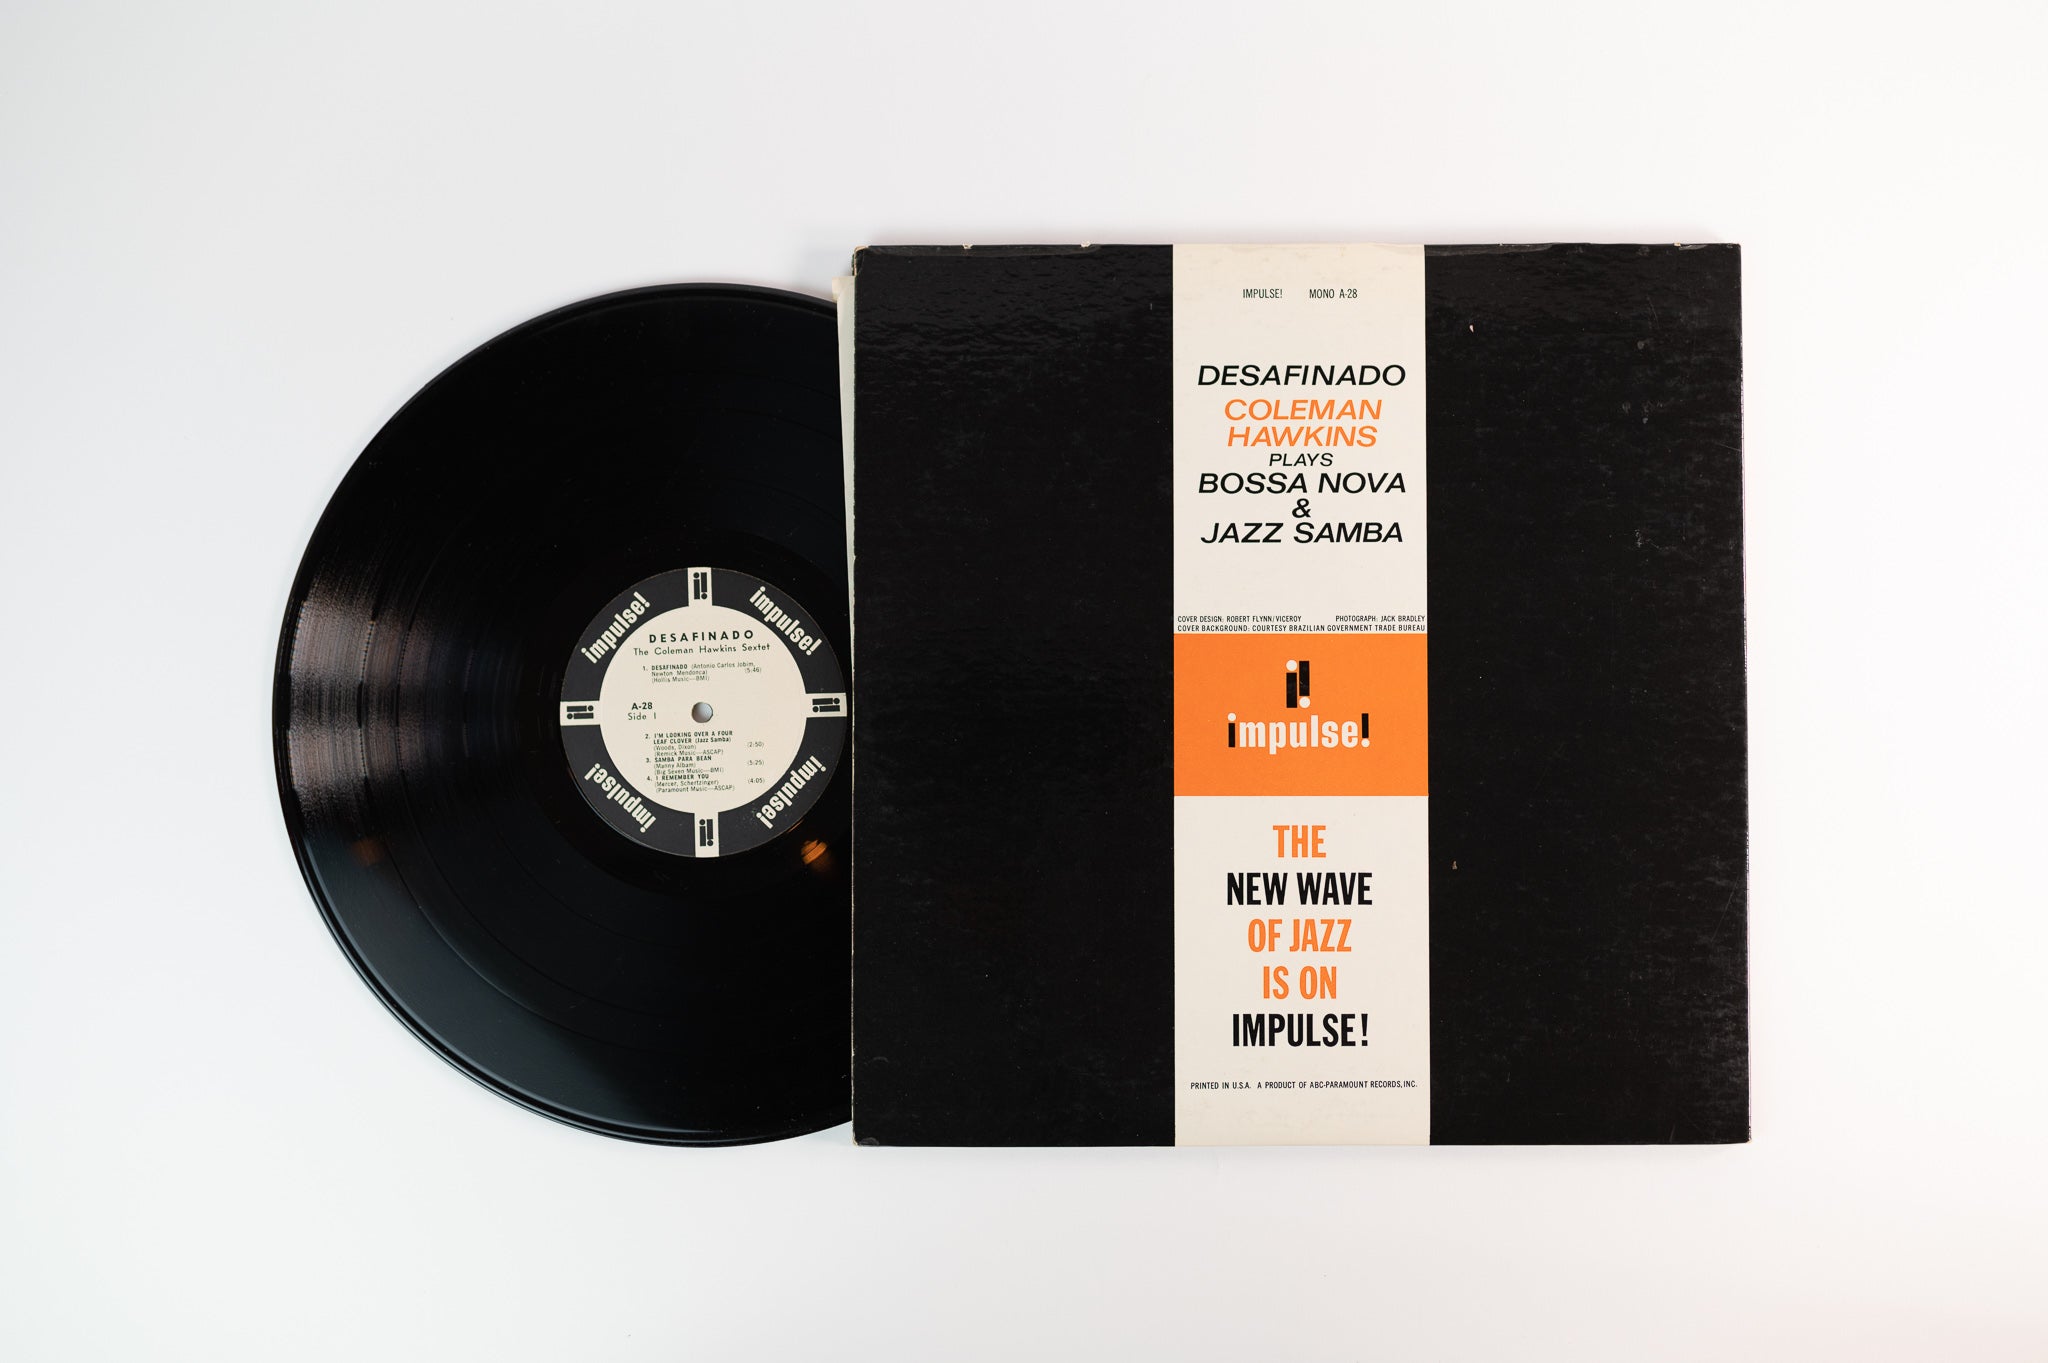 Coleman Hawkins - Desafinado (Bossa Nova & Jazz Samba) on Impulse Mono Promo